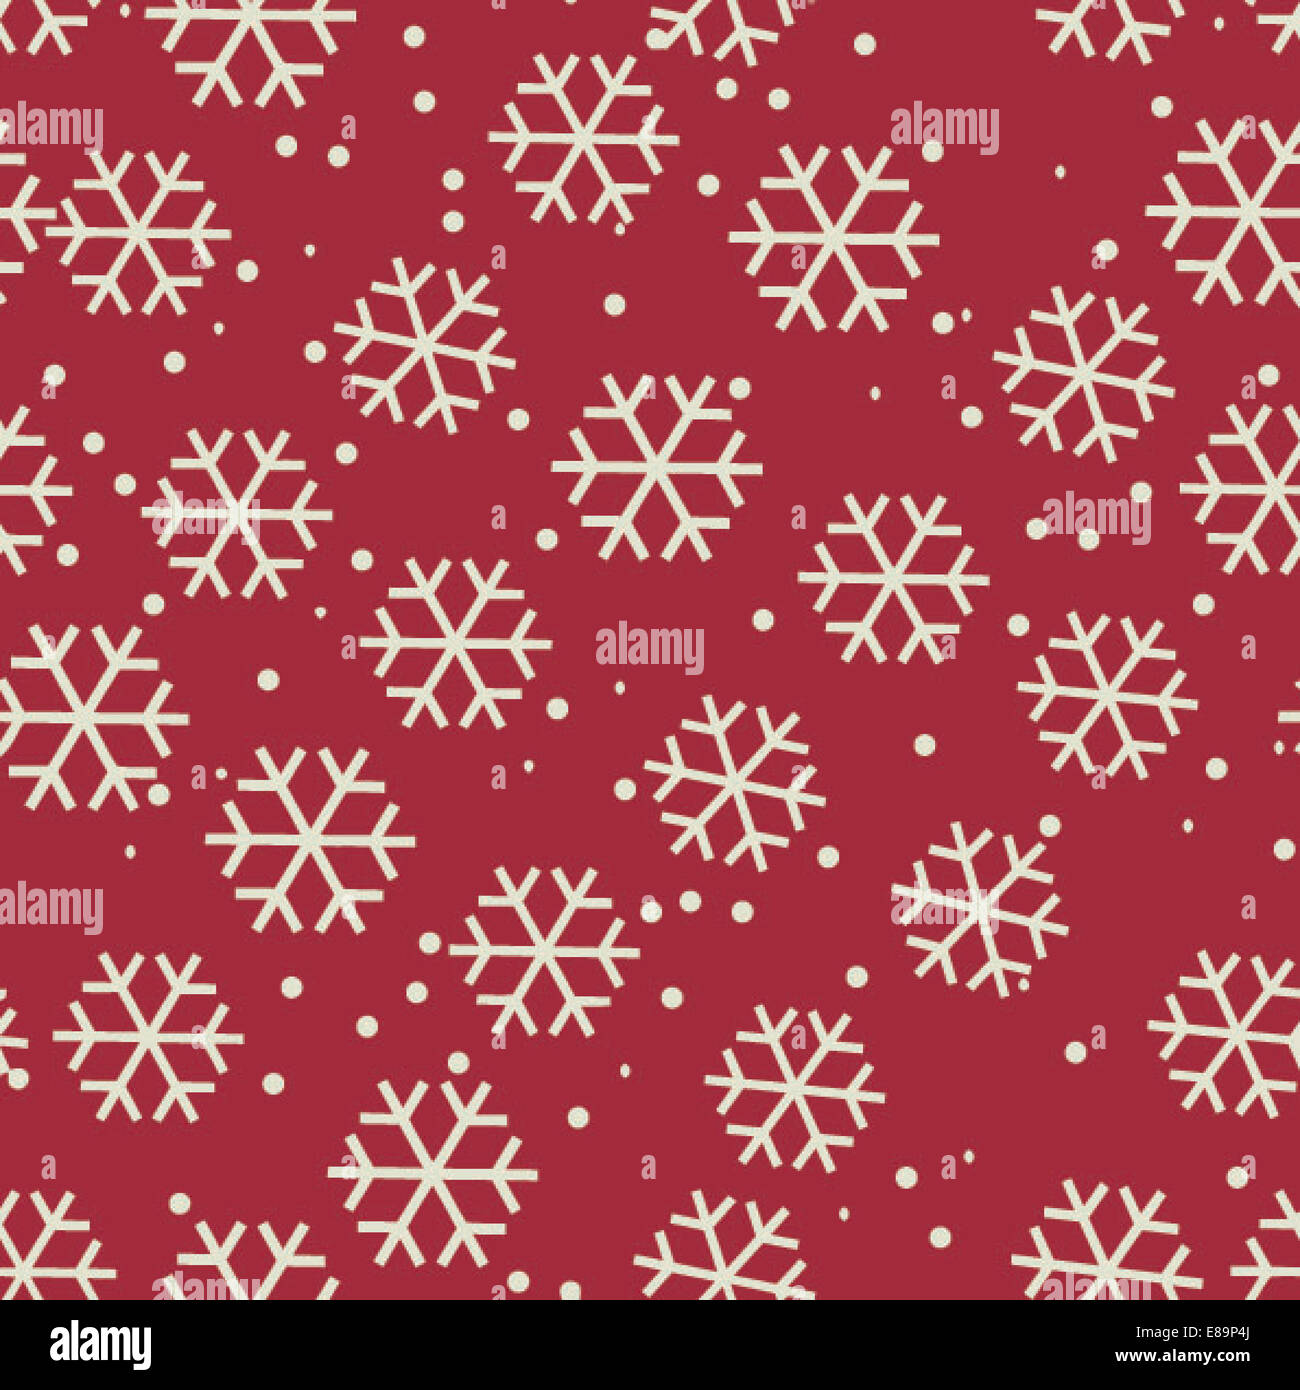 Festive holidays snowflakes background Stock Photo